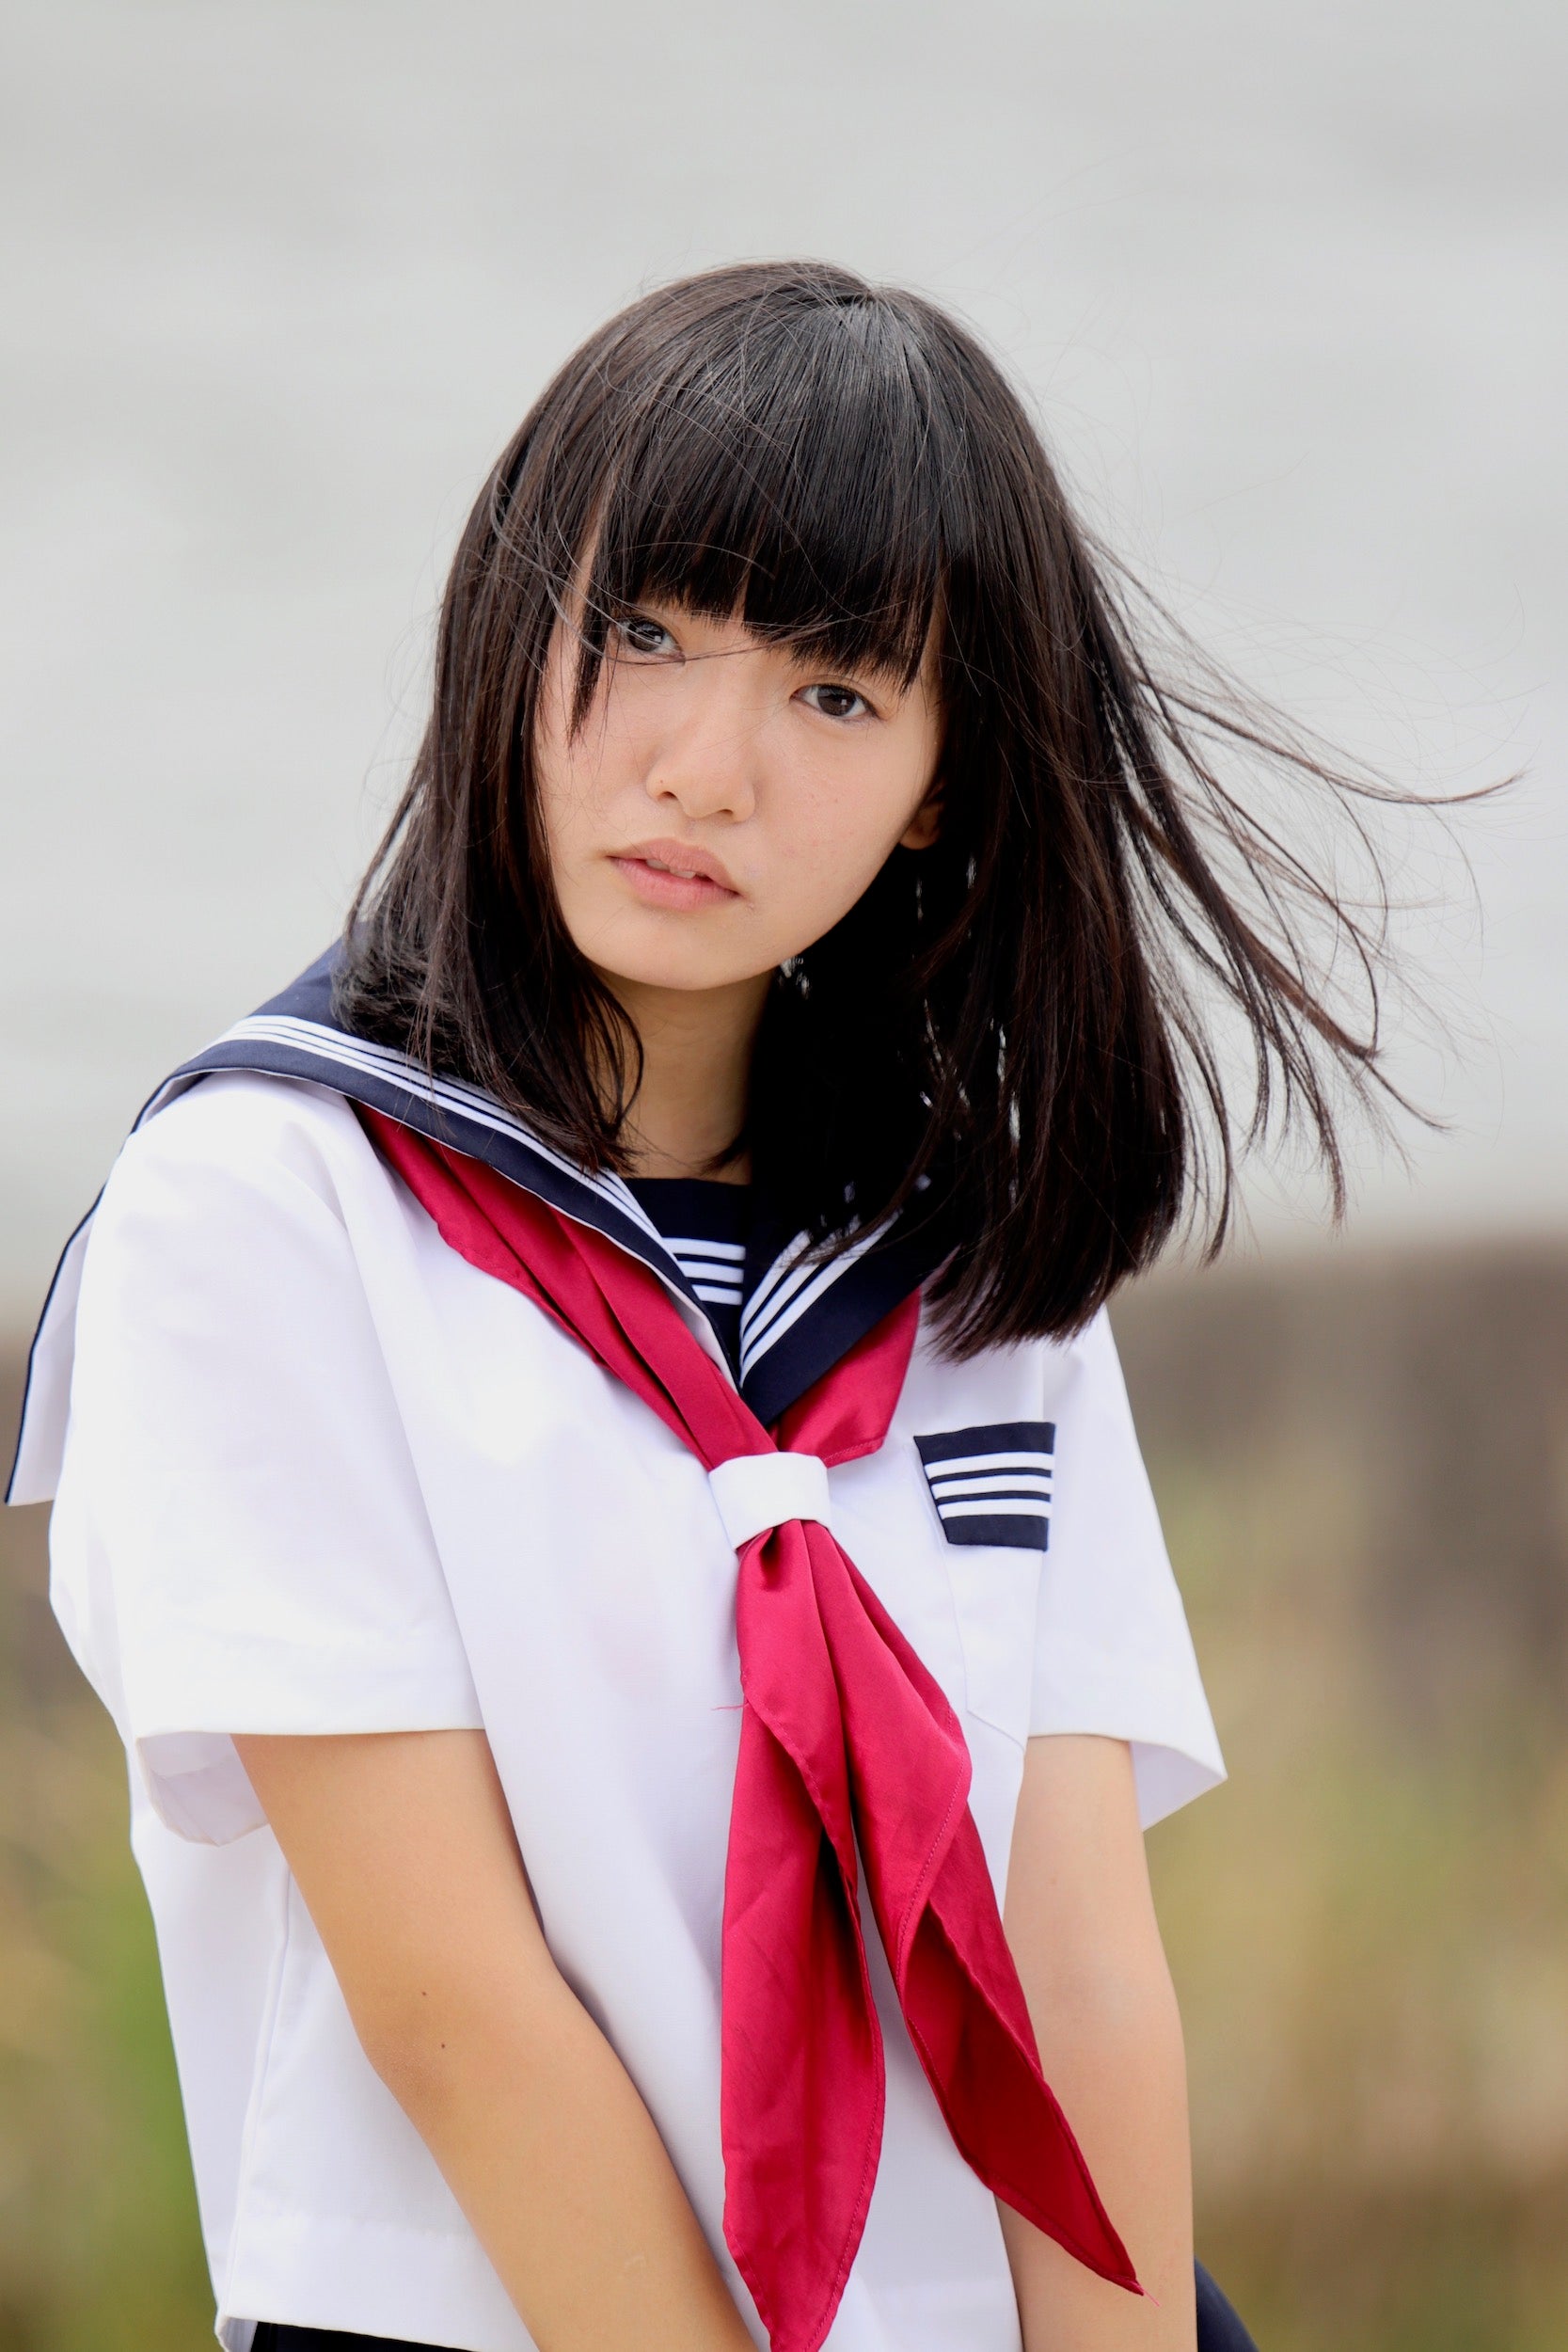 潮見凪紗さん 19歳生誕撮影会 | SHIMAのブログ